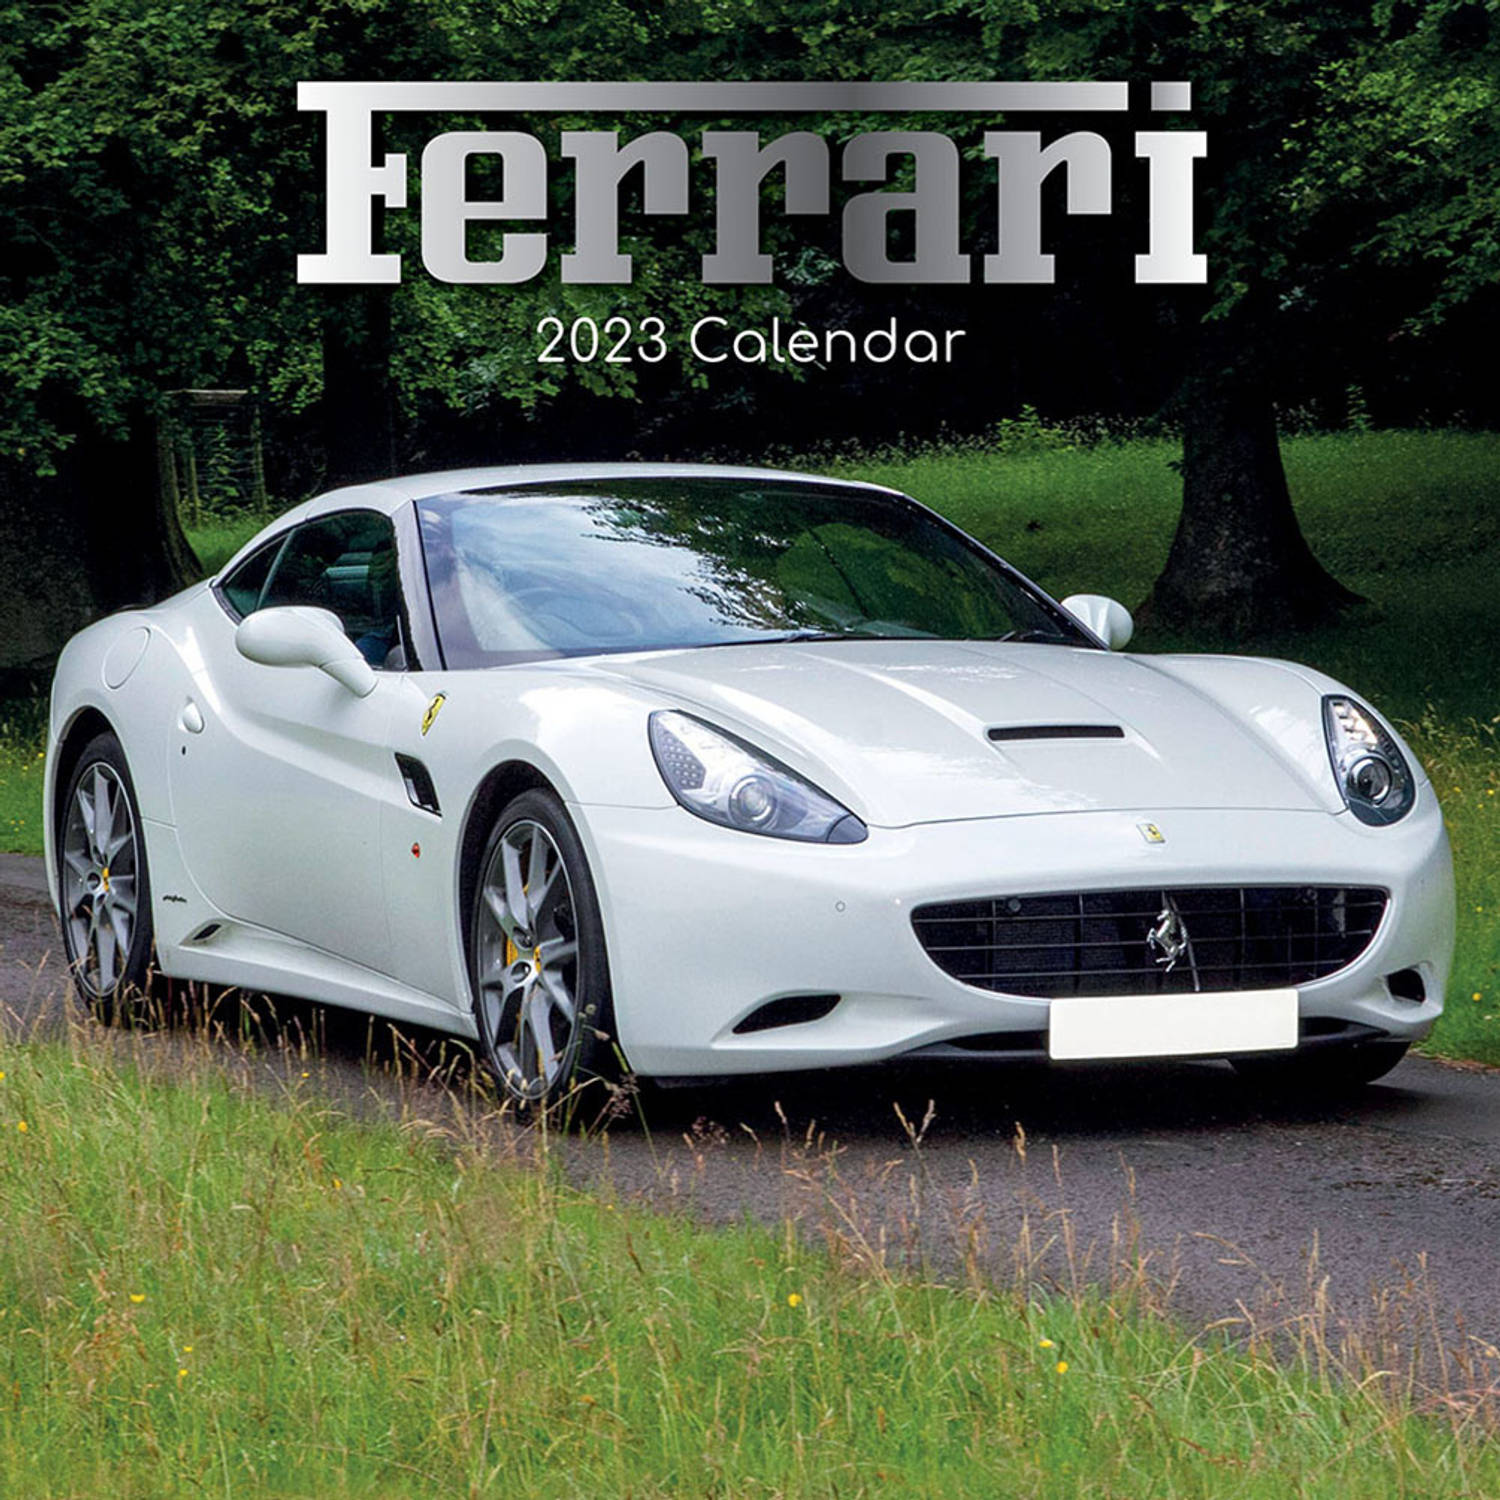 Ferrari Kalender 2023